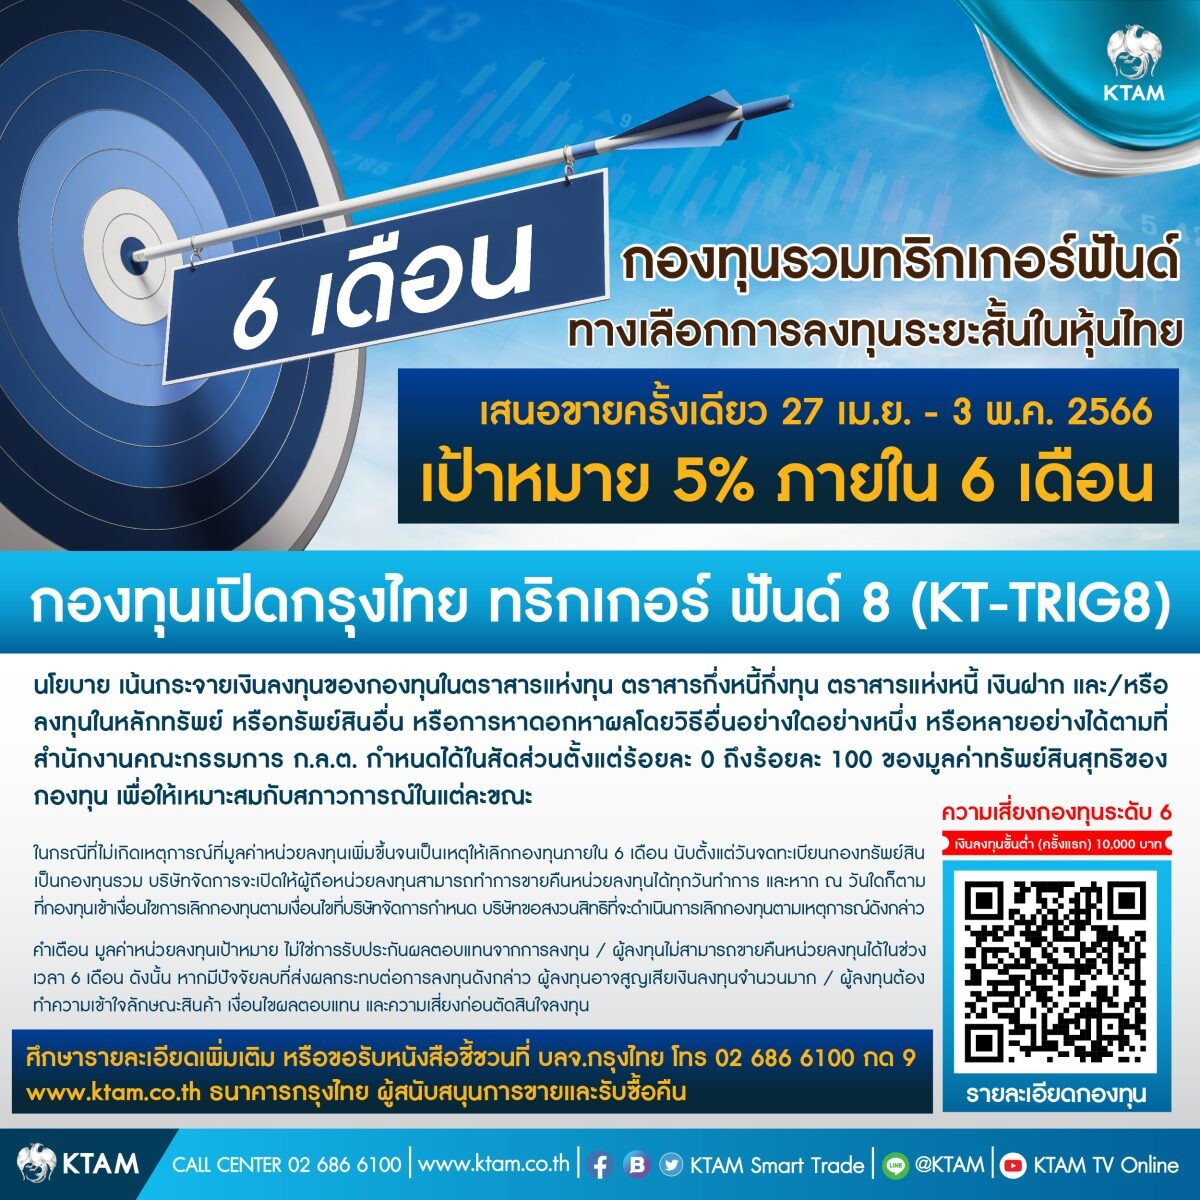 KTAM เล็งจังหวะลุยหุ้นไทย ปล่อยกองทริกเกอร์ต่อเนื่อง "KT-TRIG8" เสนอขาย 27 เม.ย. - 3 พ.ค. นี้ ตั้งเป้า 5% ใน 6 เดือน